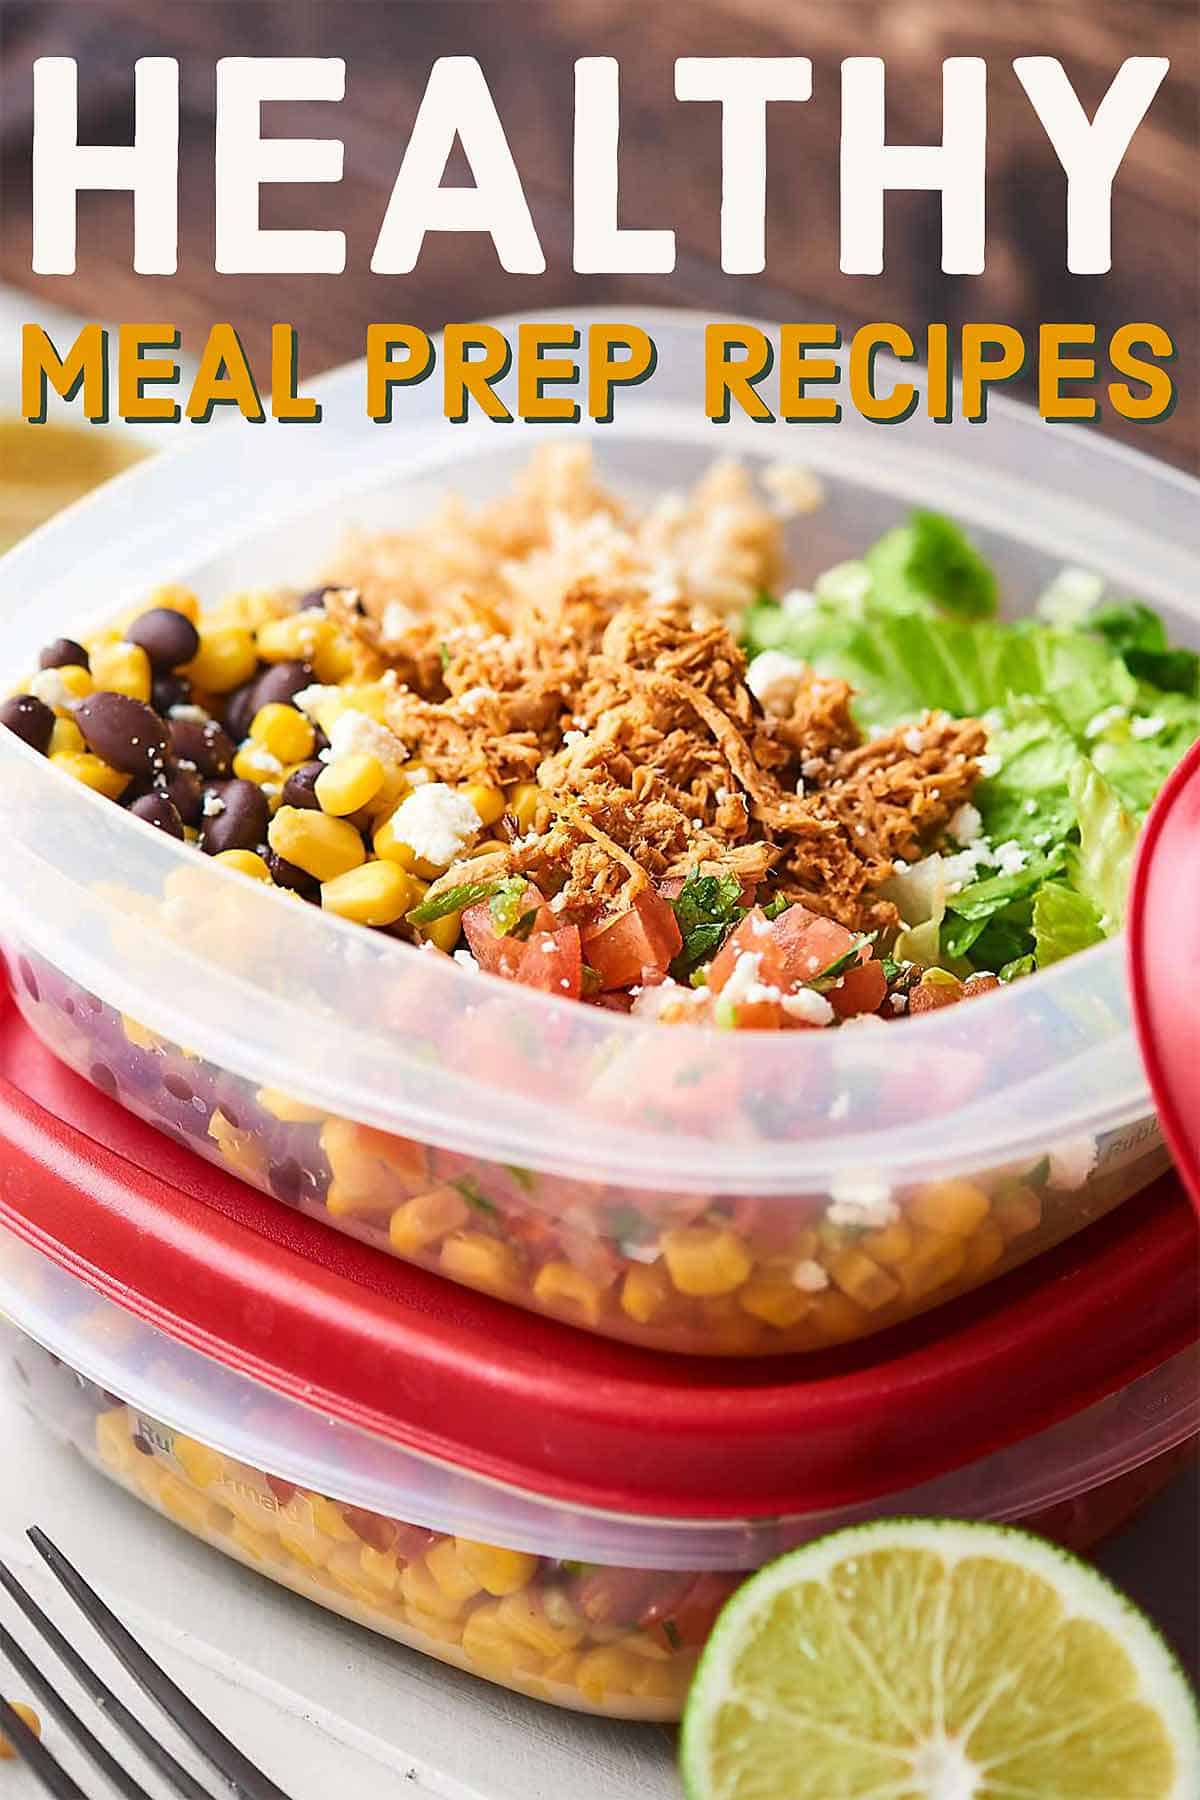 healthy meal prep recipes 2018 - quick, easy, healthy, delicious!